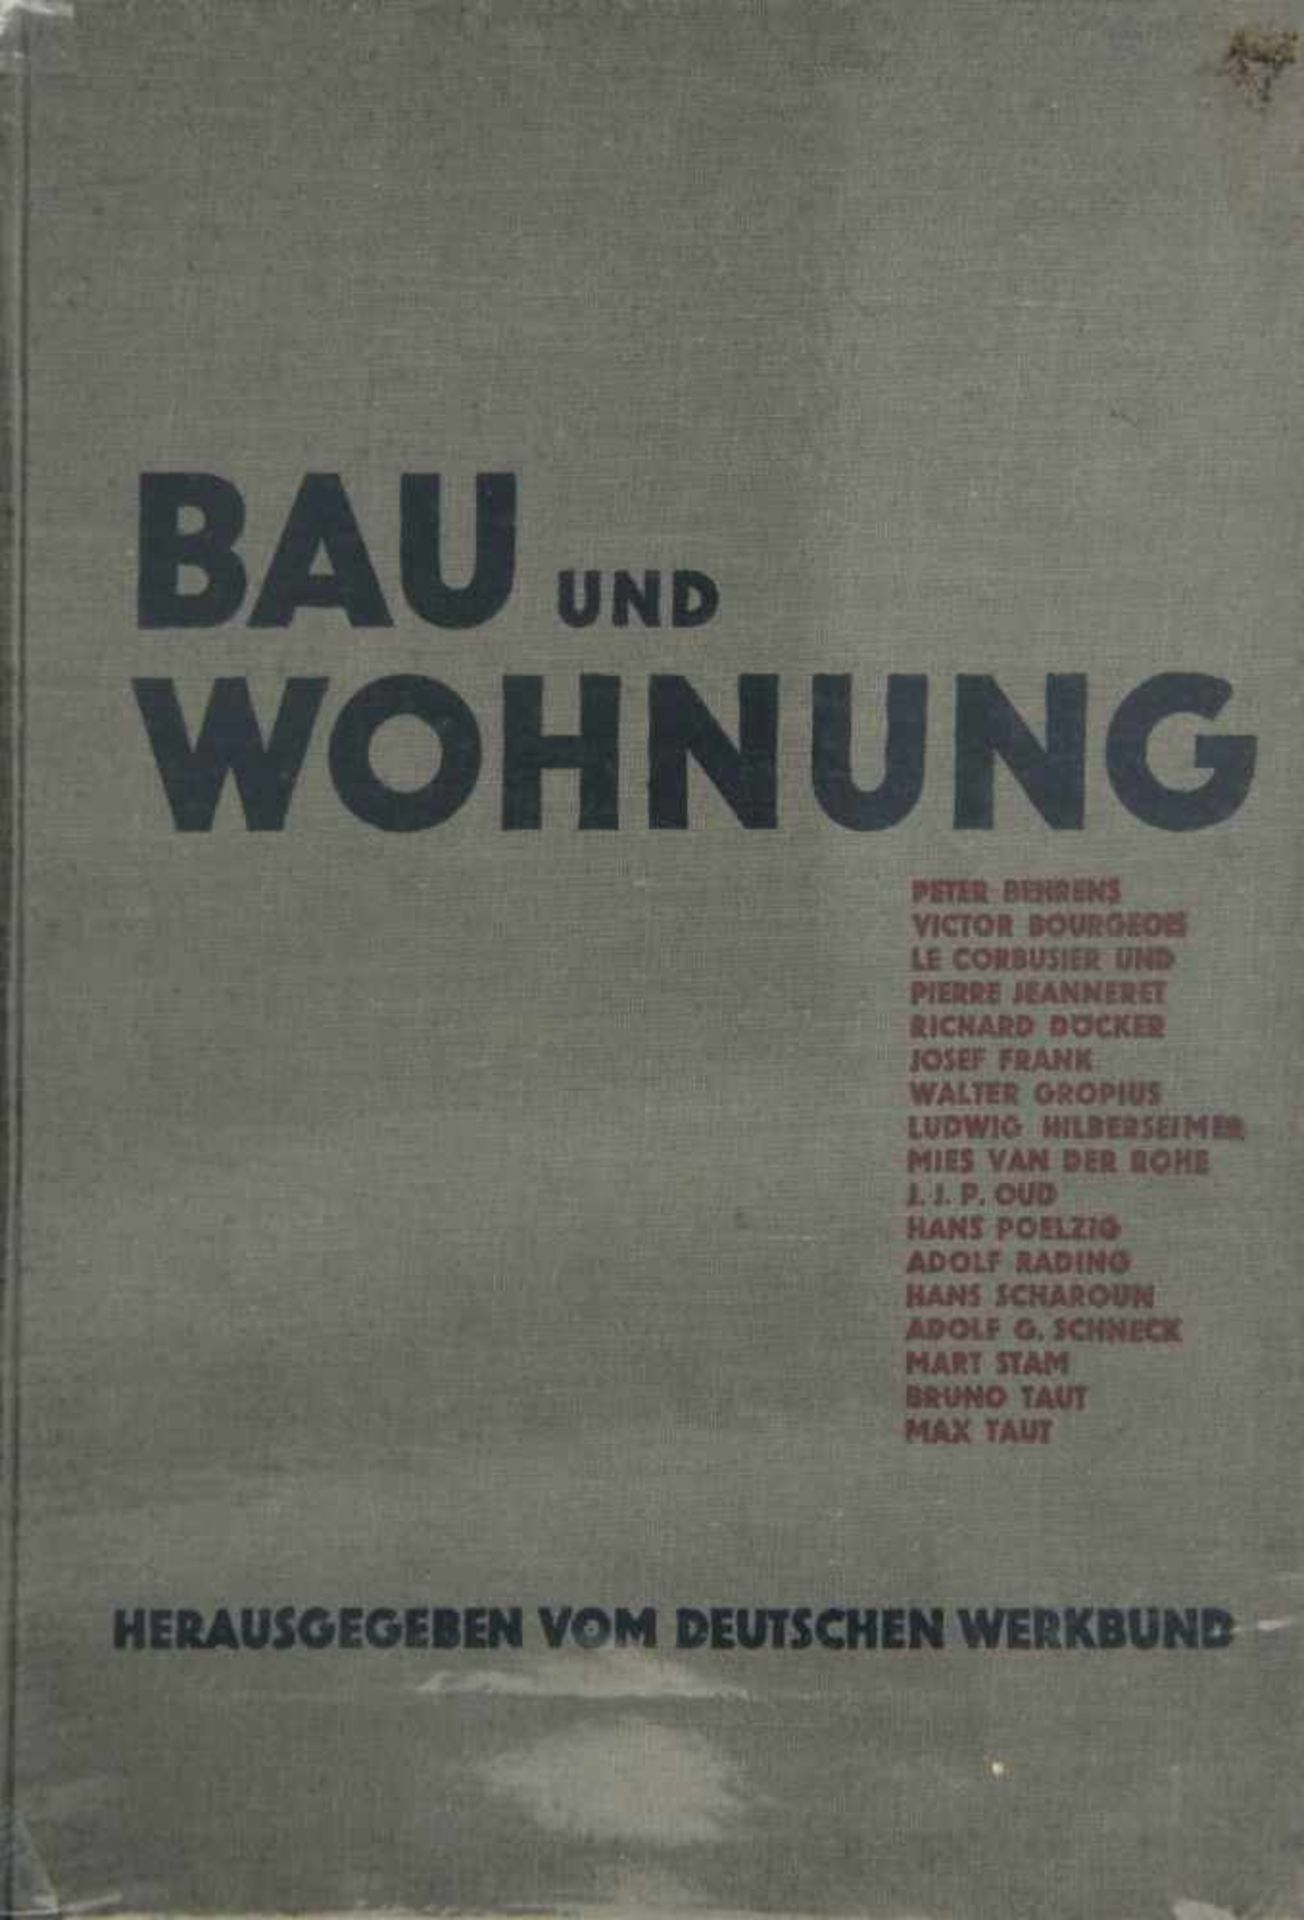 Willi Baumeister, Bau und Wohnung, 1927Bau und Wohnung, 1927Deutscher Werkbund (ed.), Bau und